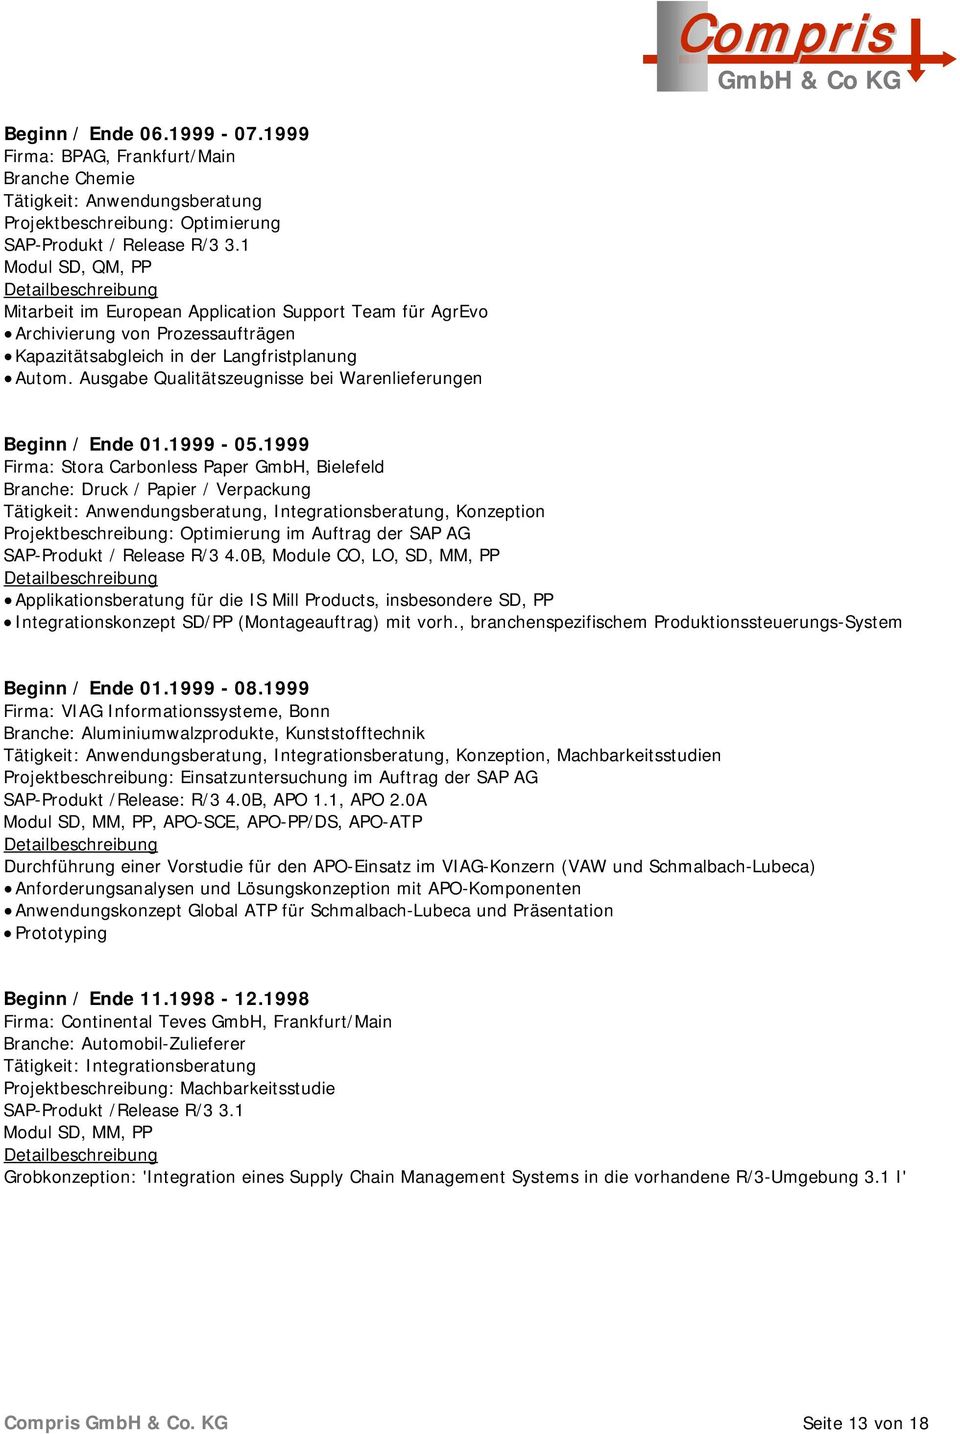 Ausgabe Qualitätszeugnisse bei Warenlieferungen Beginn / Ende 01.1999-05.